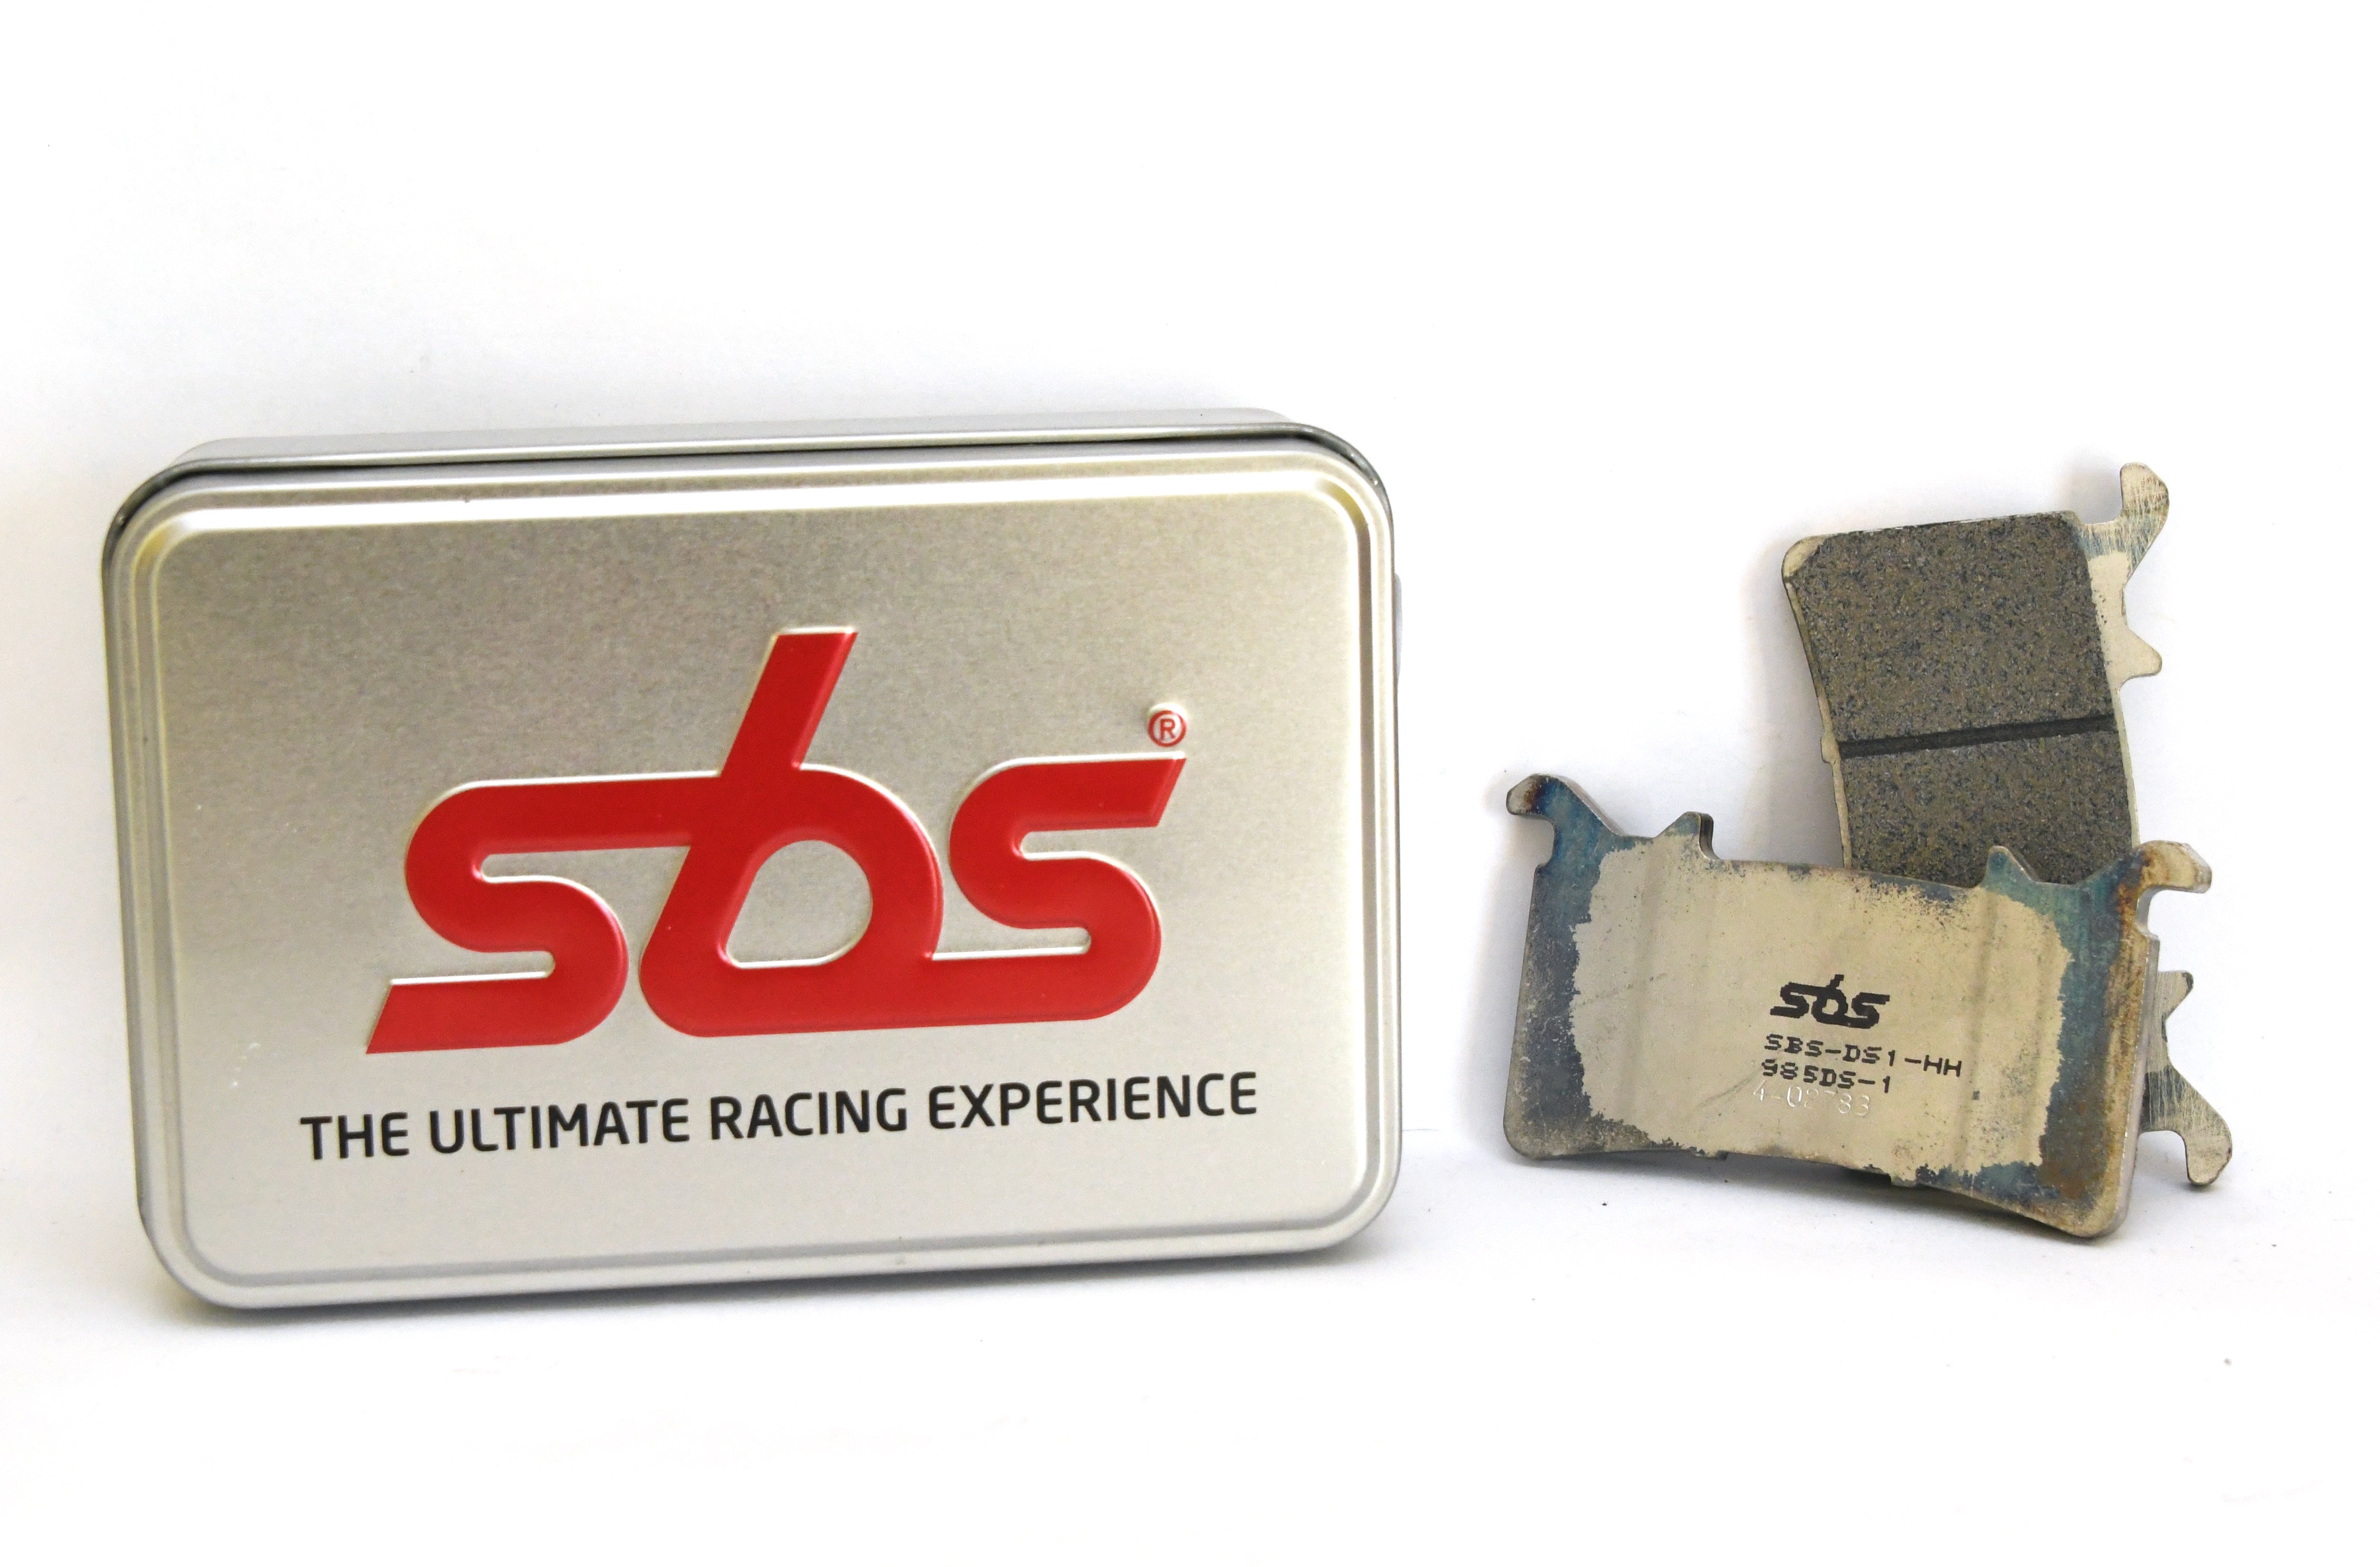 SBS 985DS-1 Dual Sinter Racing Brake Pads (Single Pack)